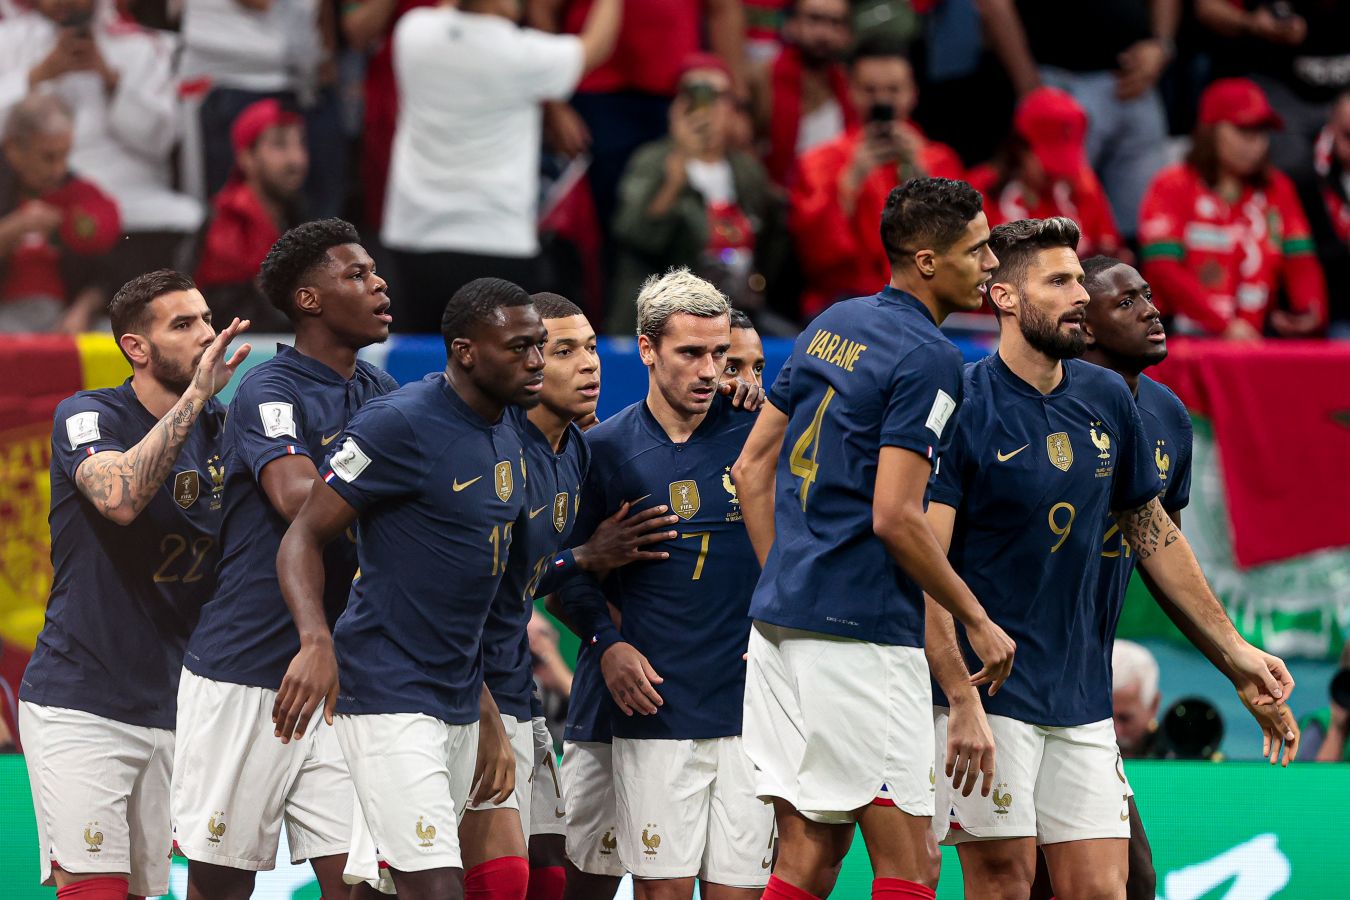 Франция — шестая сборная в истории, вышедшая в финал чемпионата мира второй раз подряд